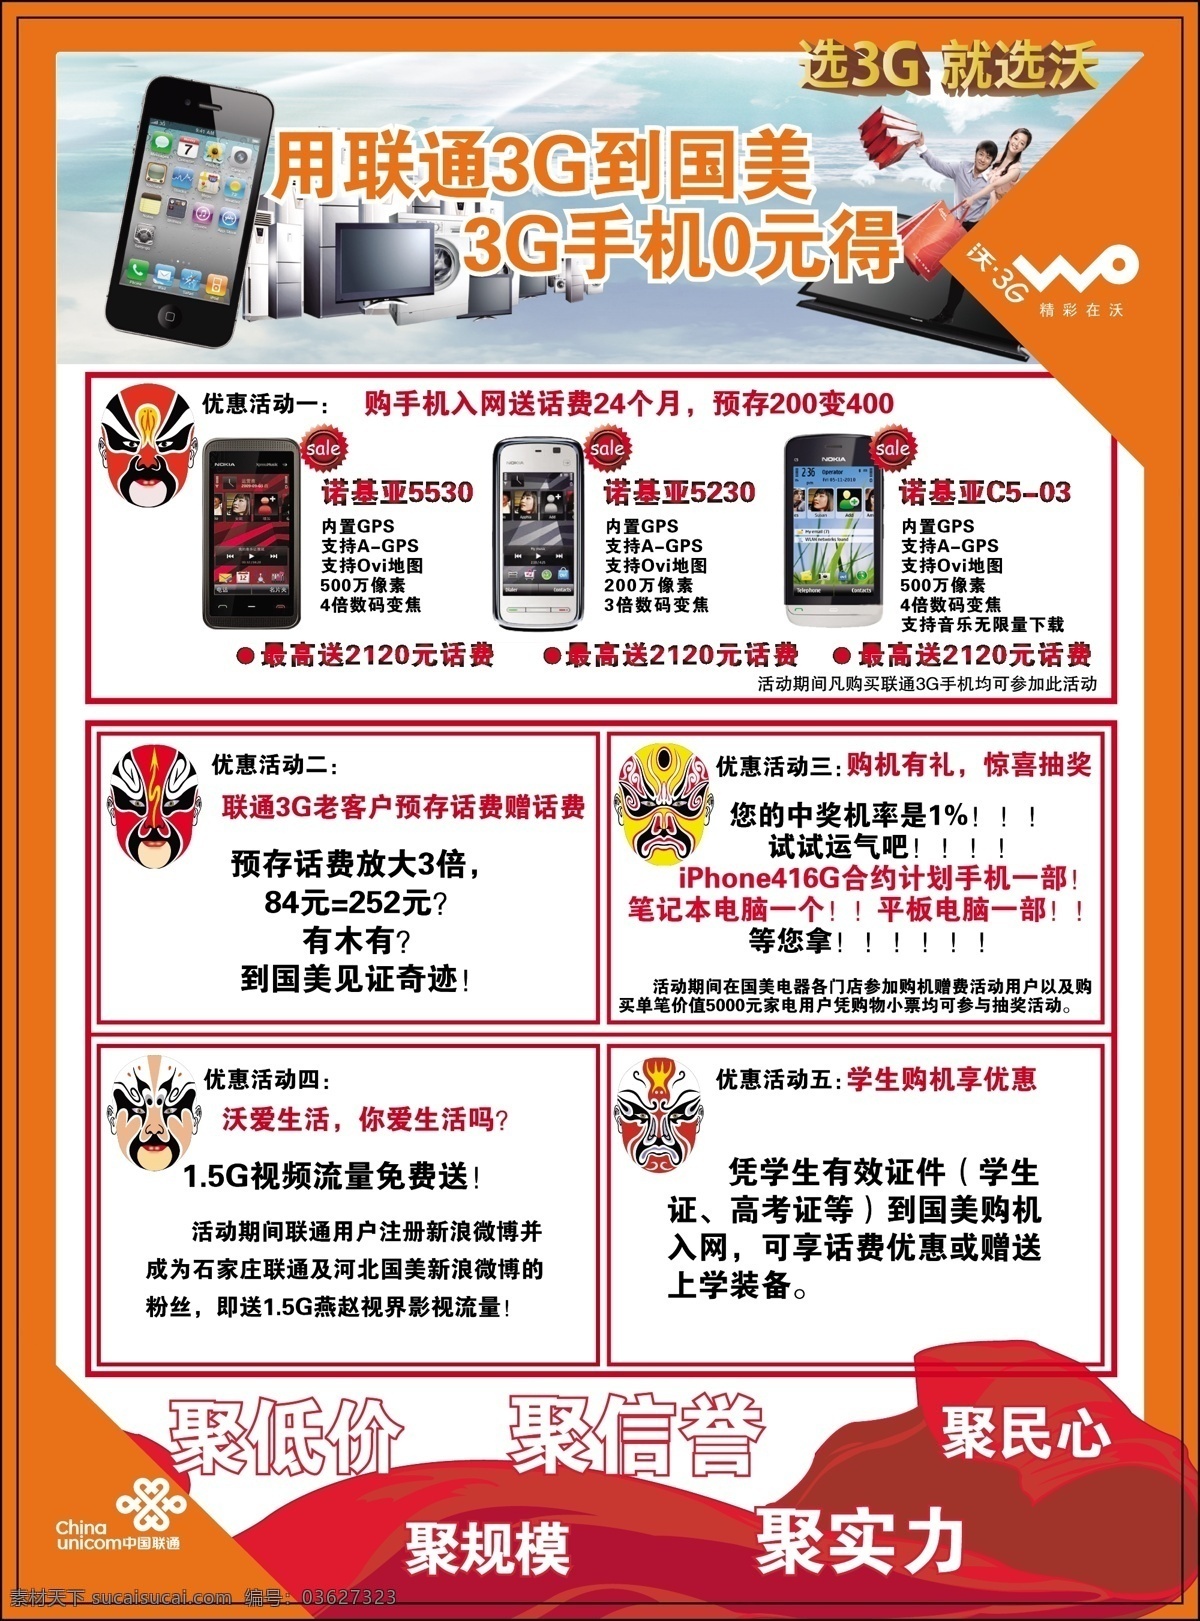 联通 3g 手机 国美 dm宣传单 购物 红丝带 脸谱 热卖标签 选3g就选沃 矢量 矢量图 现代科技